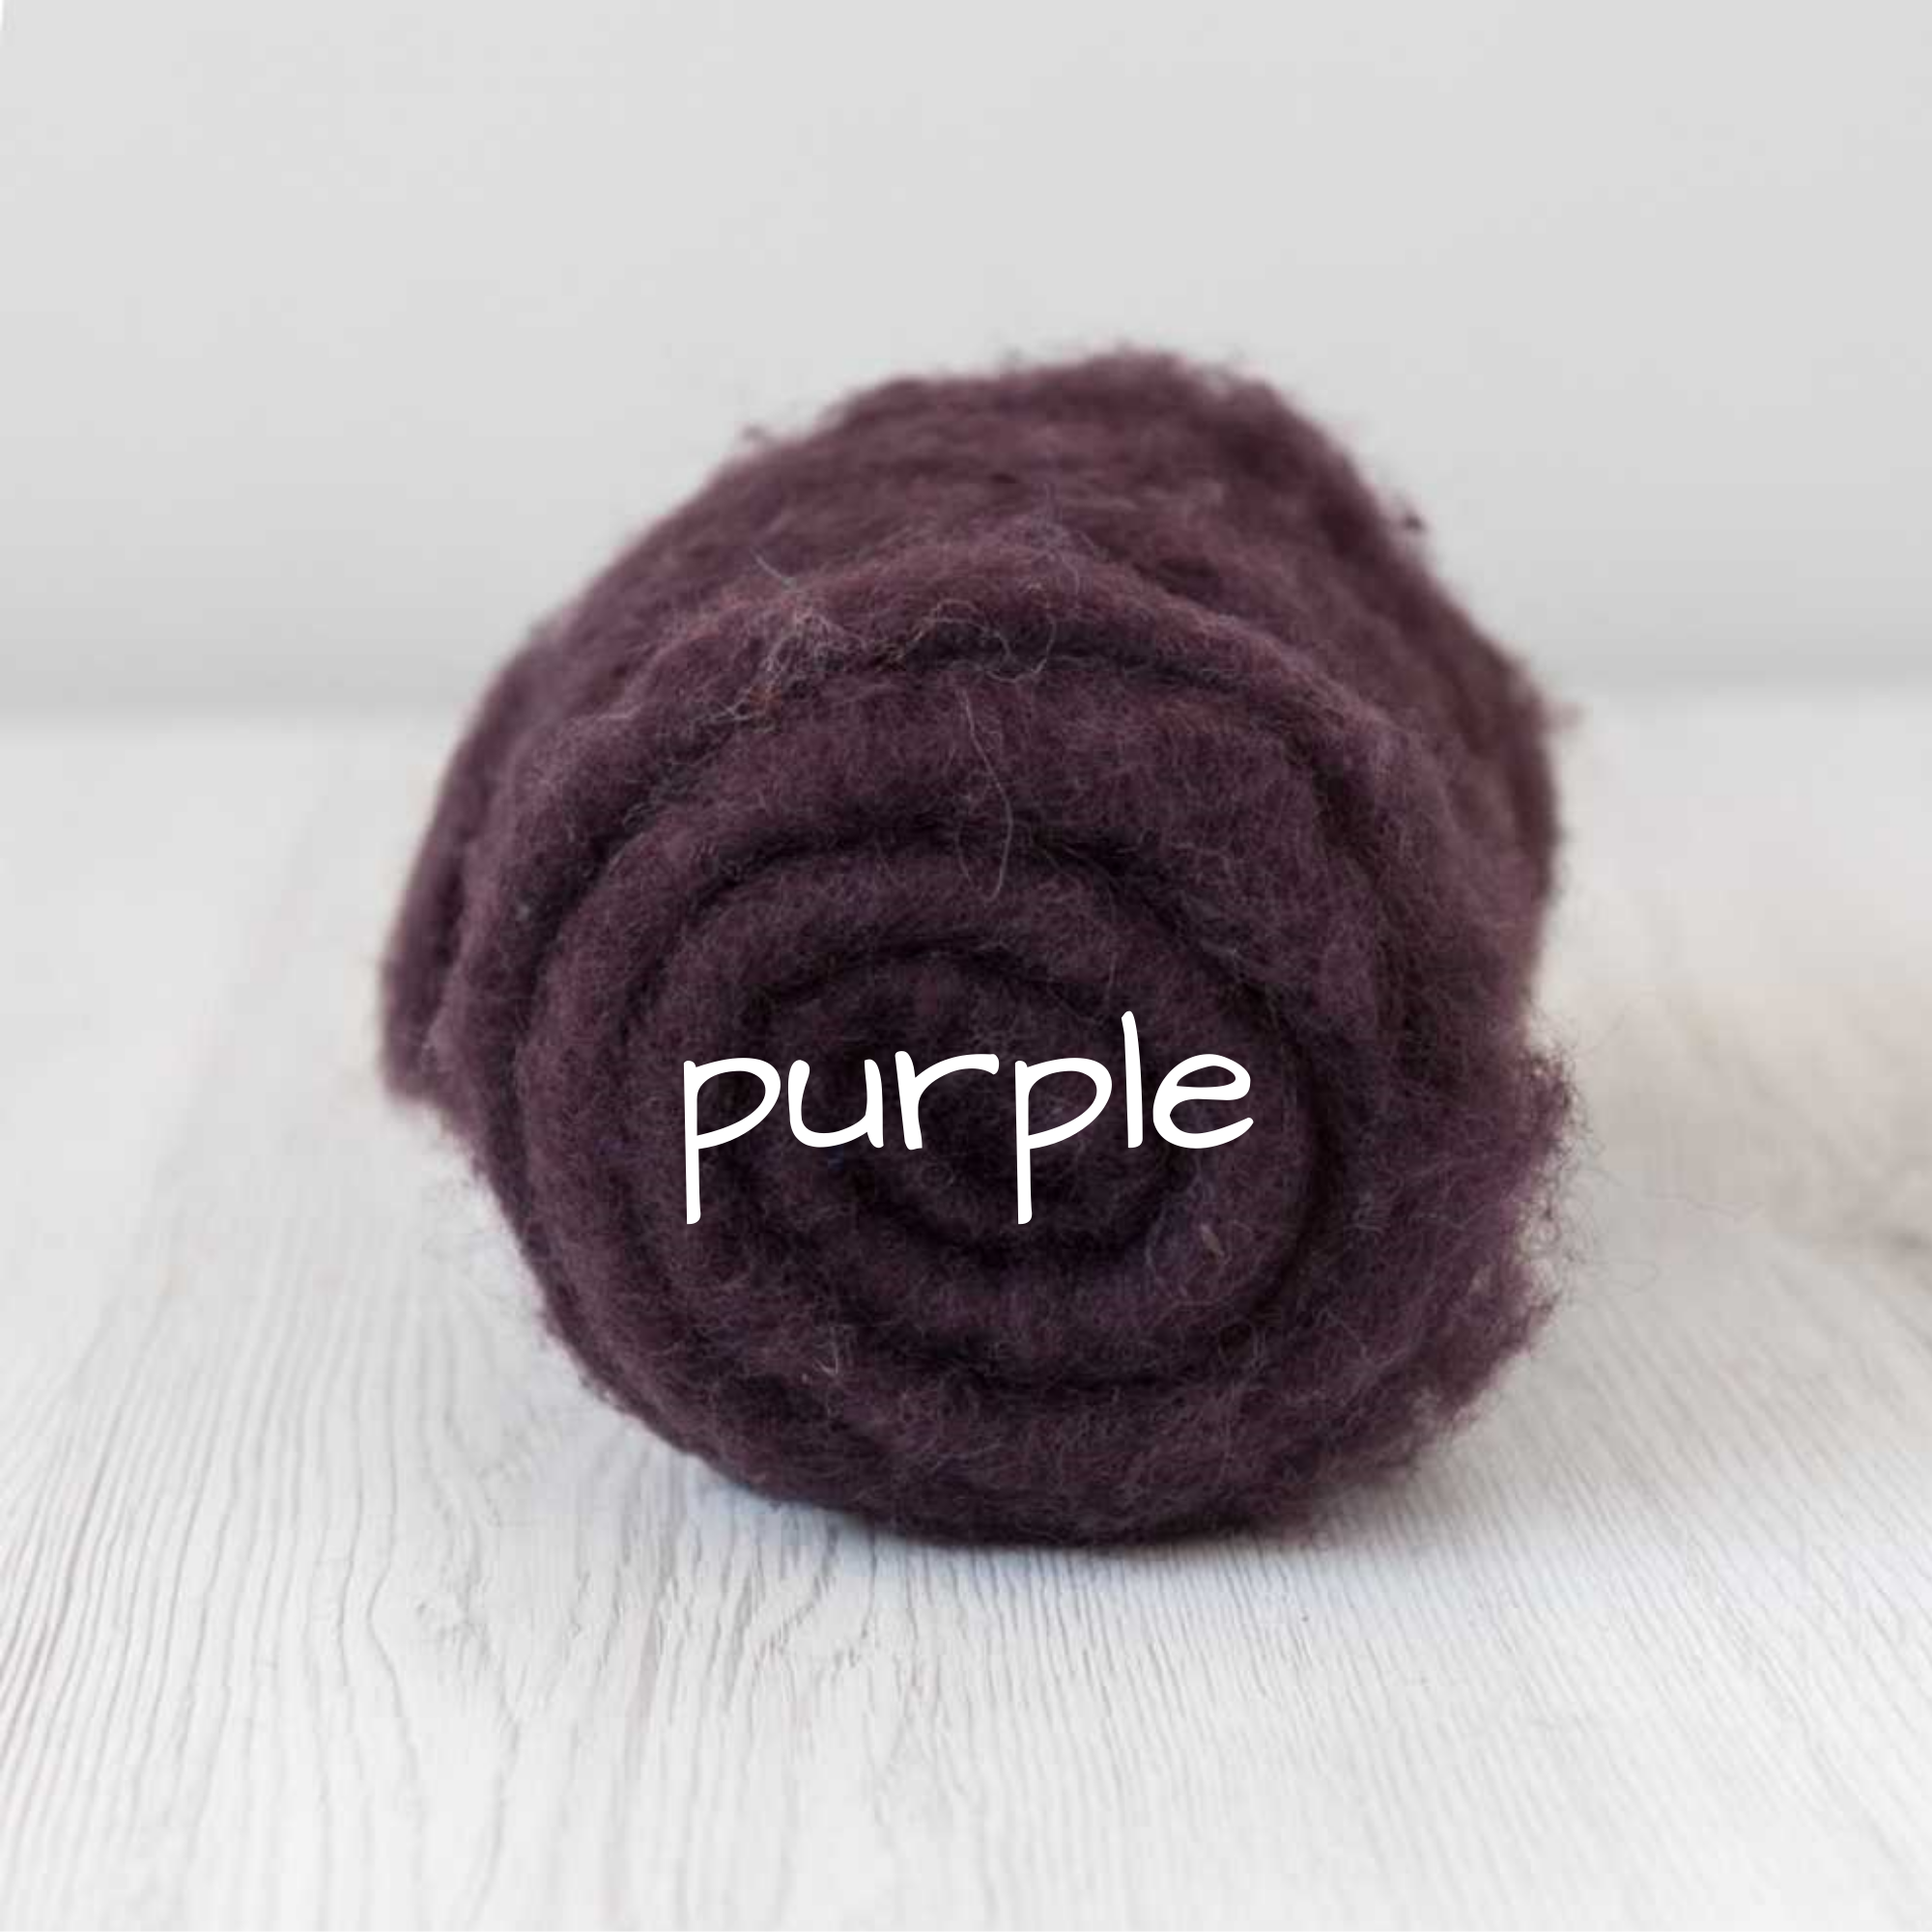 Carded Batting New Zealand Wool DHG 'Maori' Batt - Purple